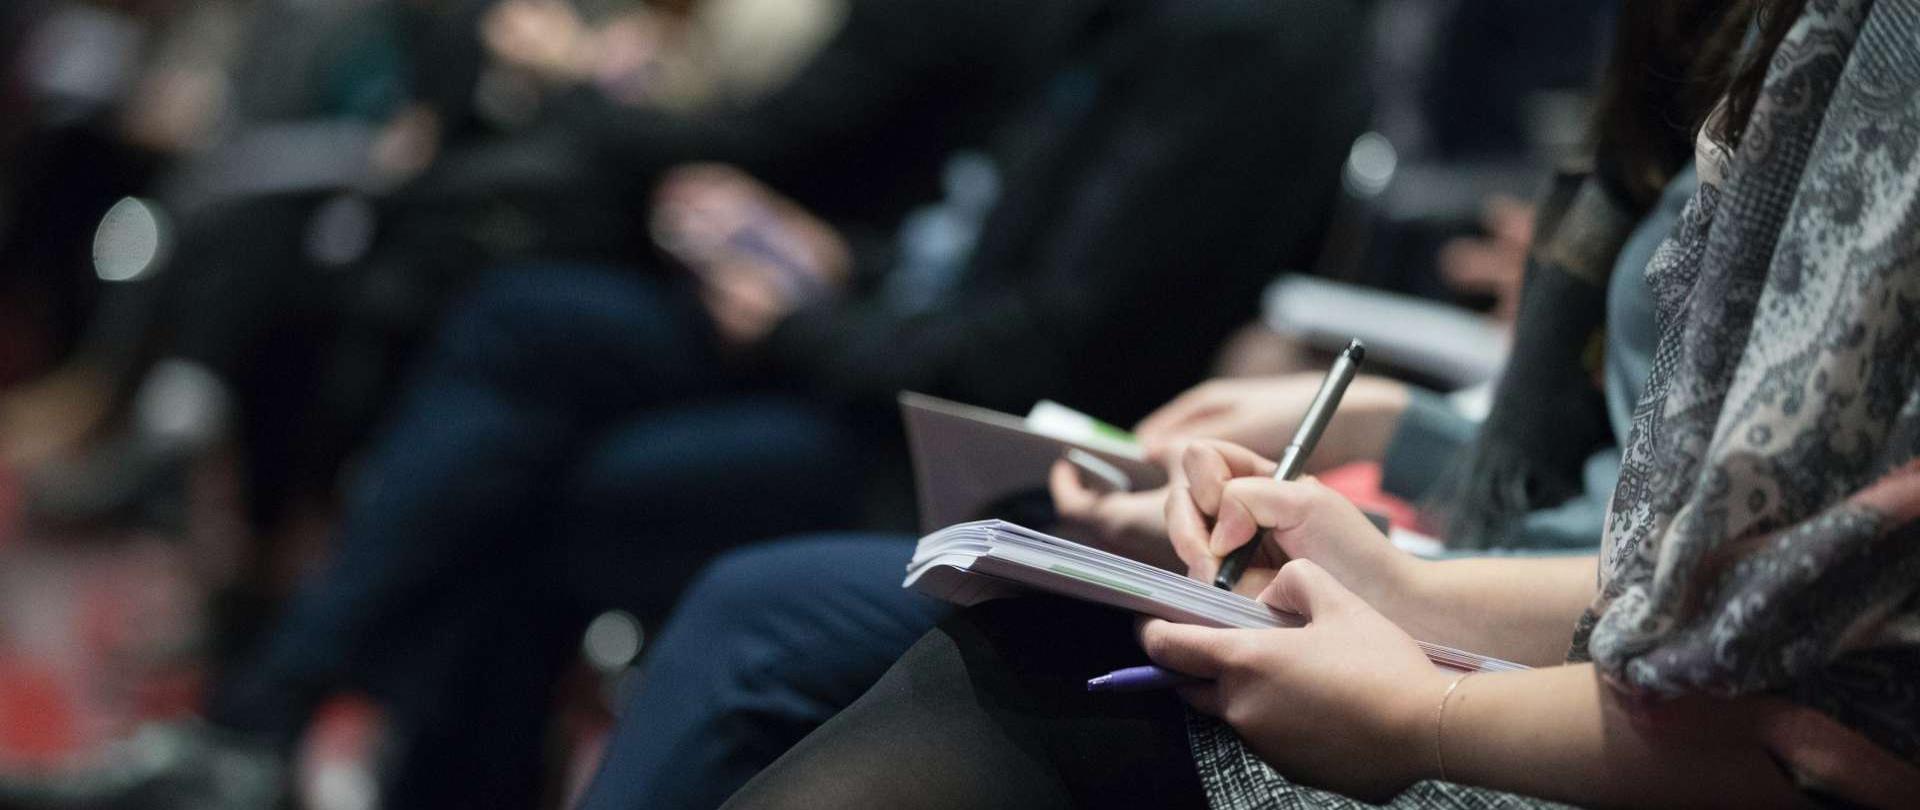 fotografia przedstawia sylwetki siedzących osób, które trzymają w dłoniach notesy i długopisy